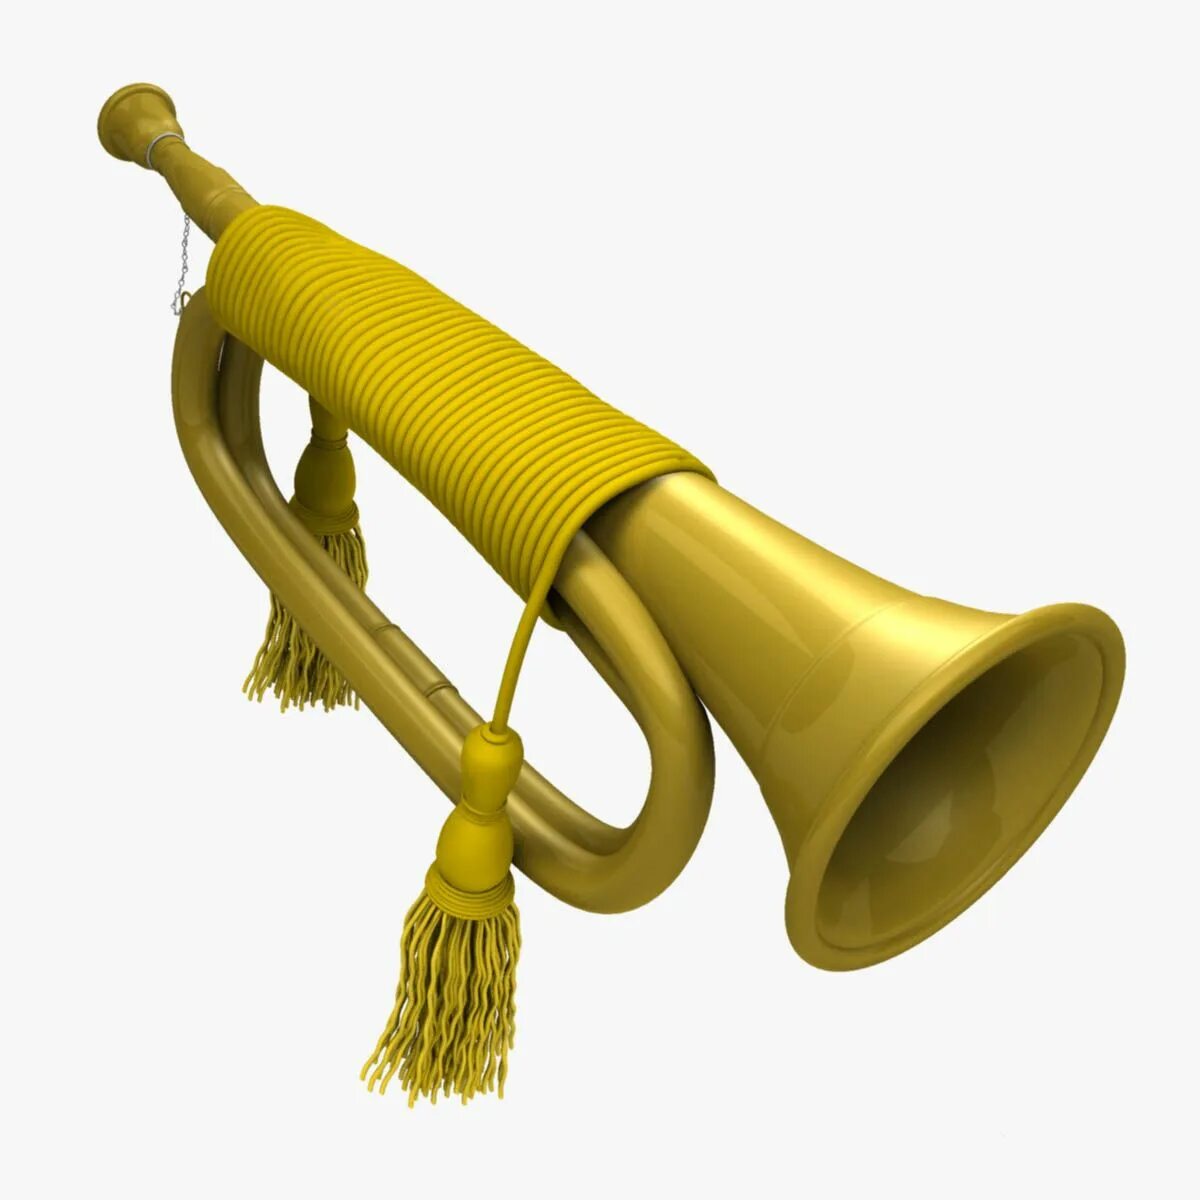 Музыкальный инструмент "труба". Горн духовой музыкальный инструмент. Трубит в горн. Труба музыкальный инструмент на прозрачном фоне.